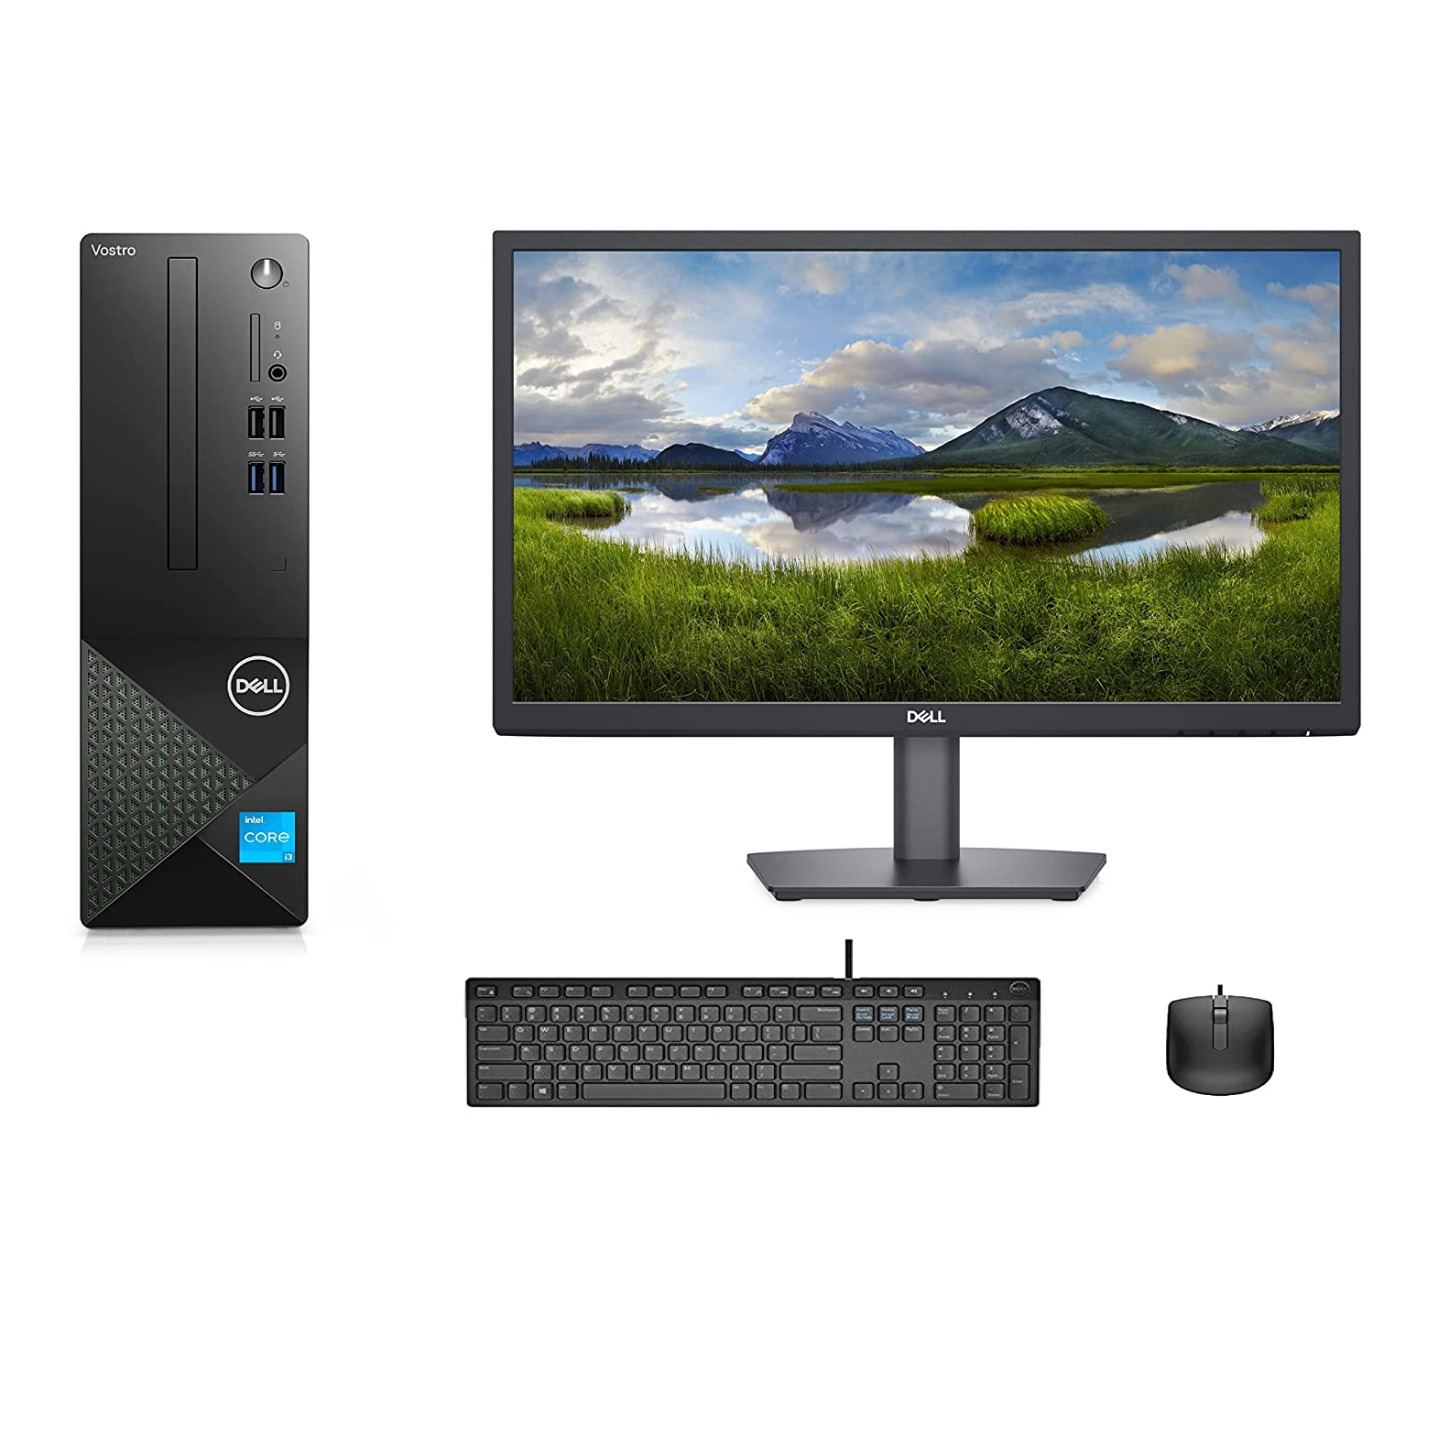 Dell Vostro 3710 Small Desktop with Monitor – 4YR-D255275UIN8 | 21.45-inch Monitor | Intel Core i5 12th Gen Processor | 8GB DDR4 RAM